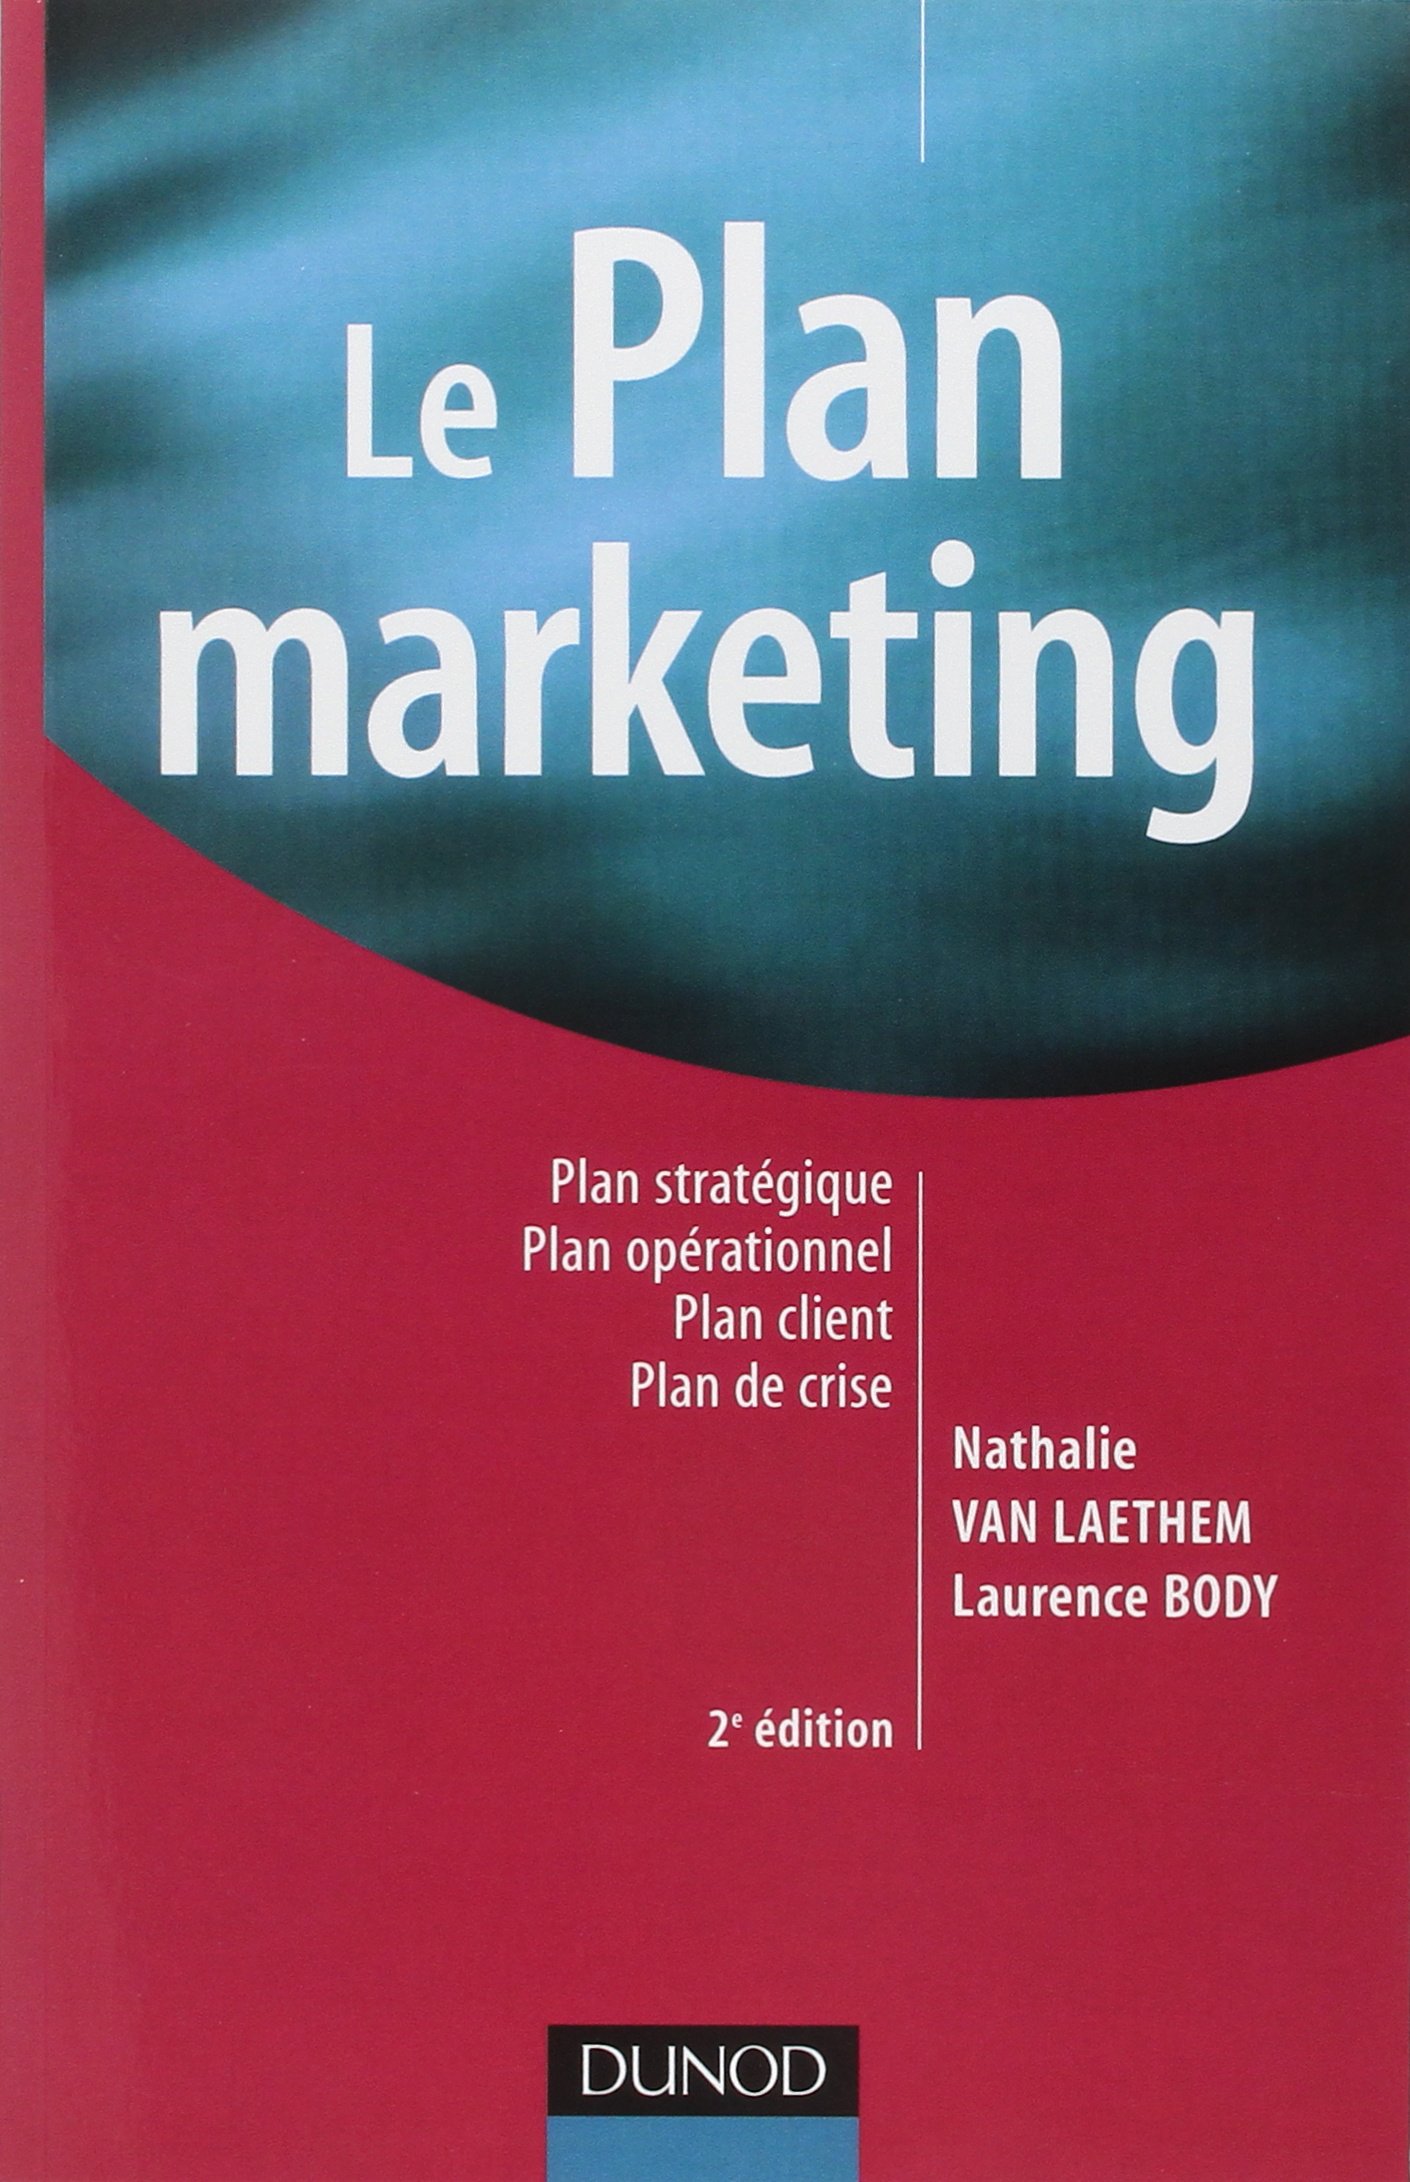 Le plan marketing - 2ème édition: Plan stratégique - Plan opérationnel - Plan marketing client- Plan de crise